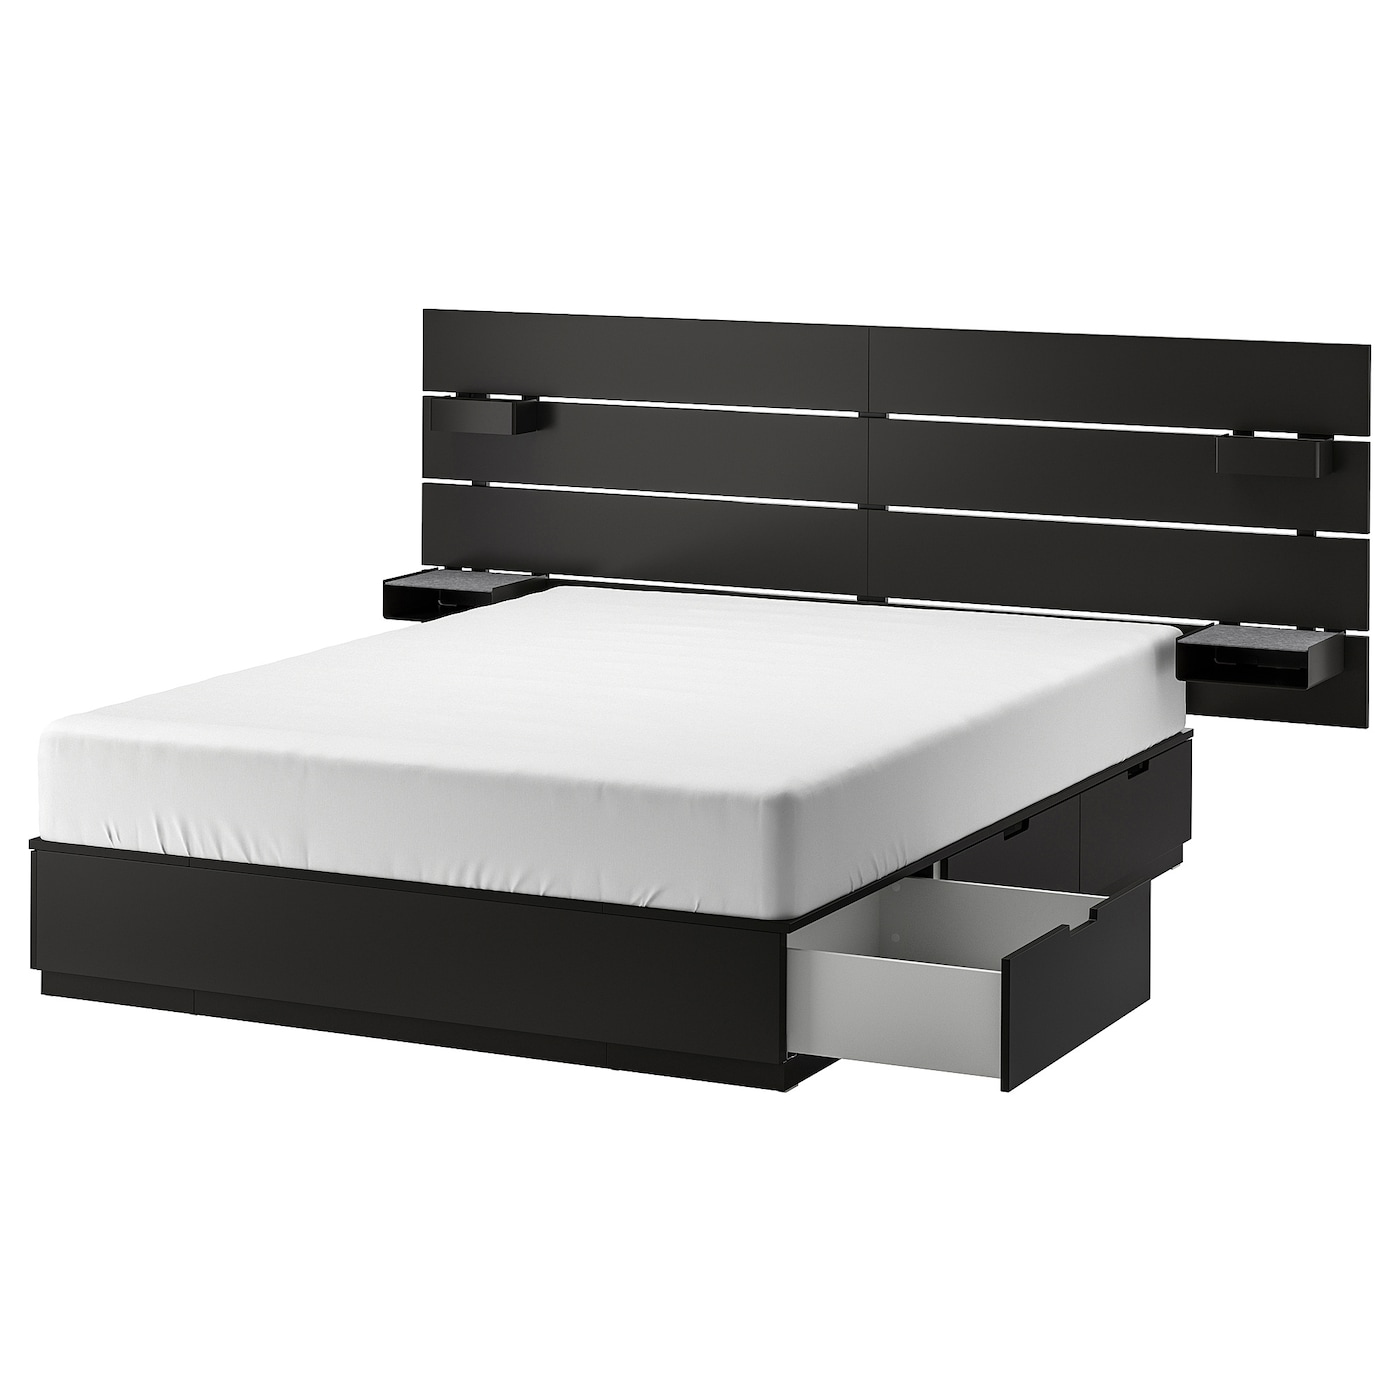 Каркас кровати с ящиком для хранения - IKEA NORDLI, 200х140 см, черный, НОРДЛИ ИКЕА